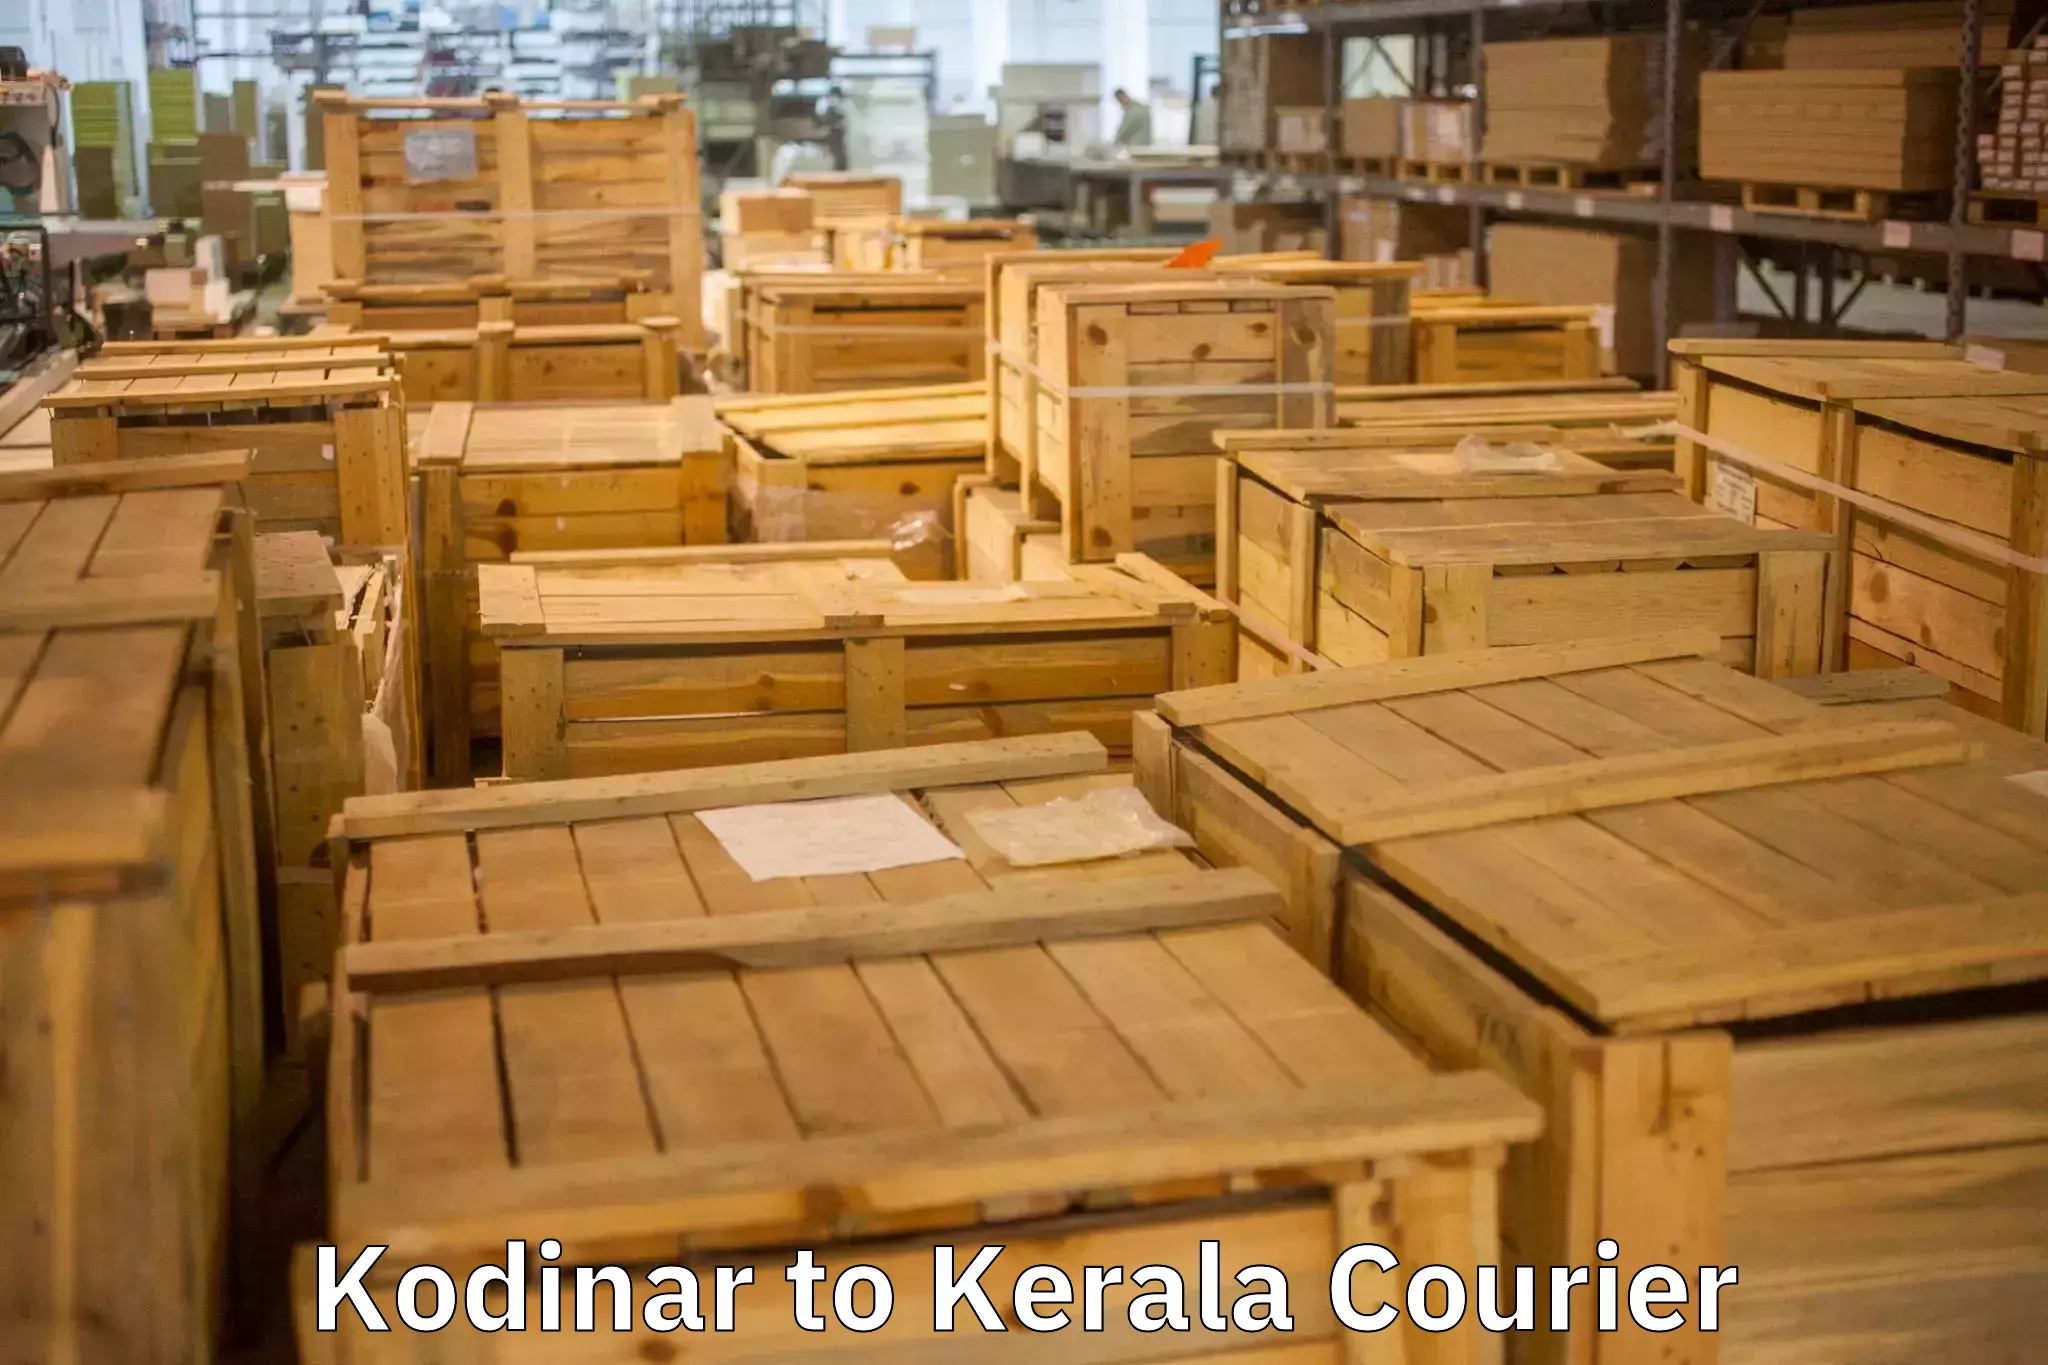 Furniture transport experts Kodinar to Kerala